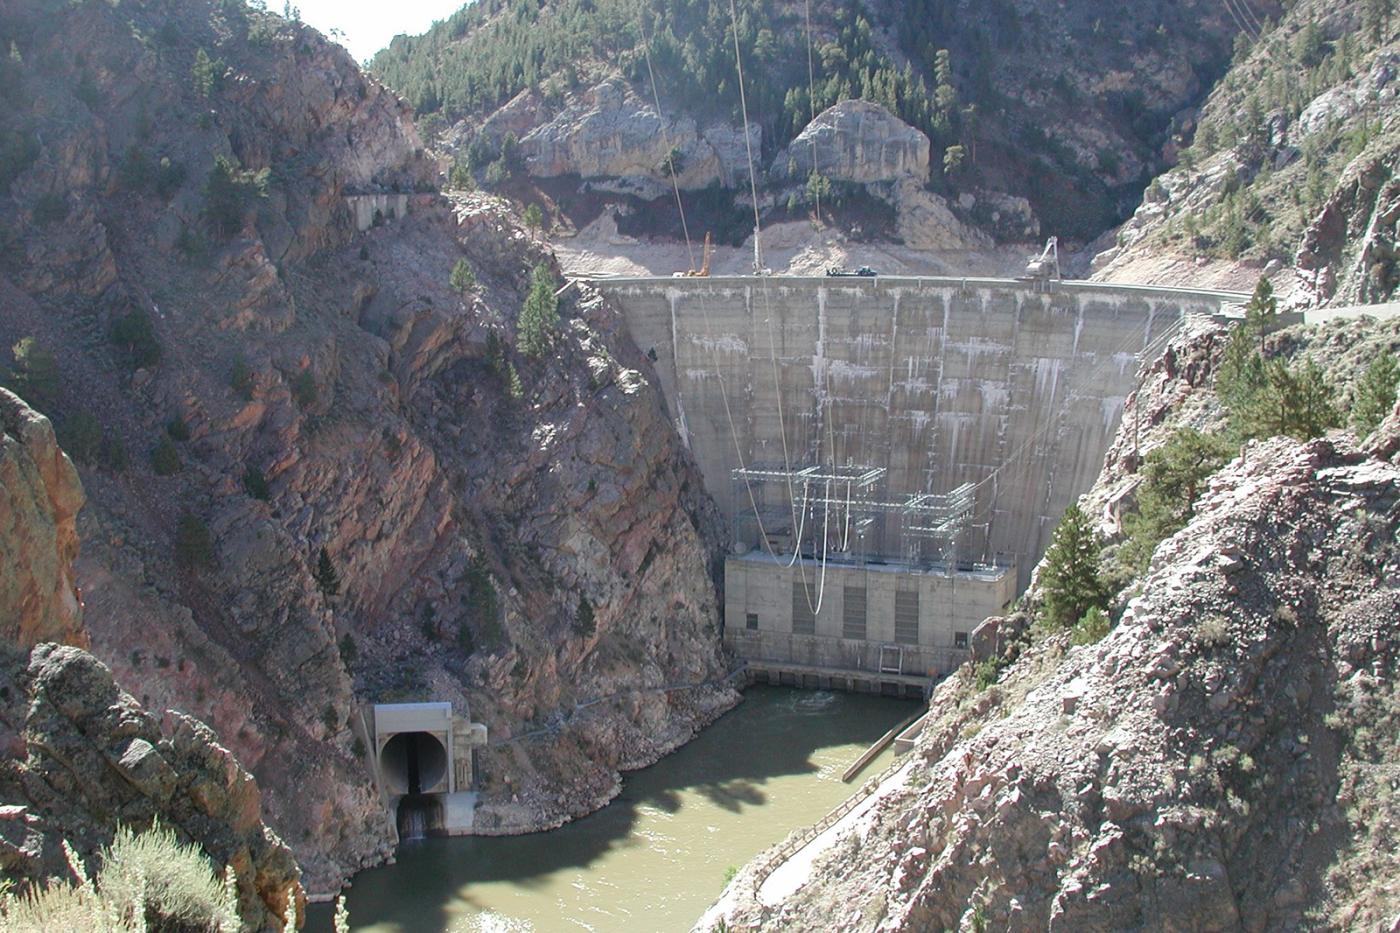 Seminoe Dam